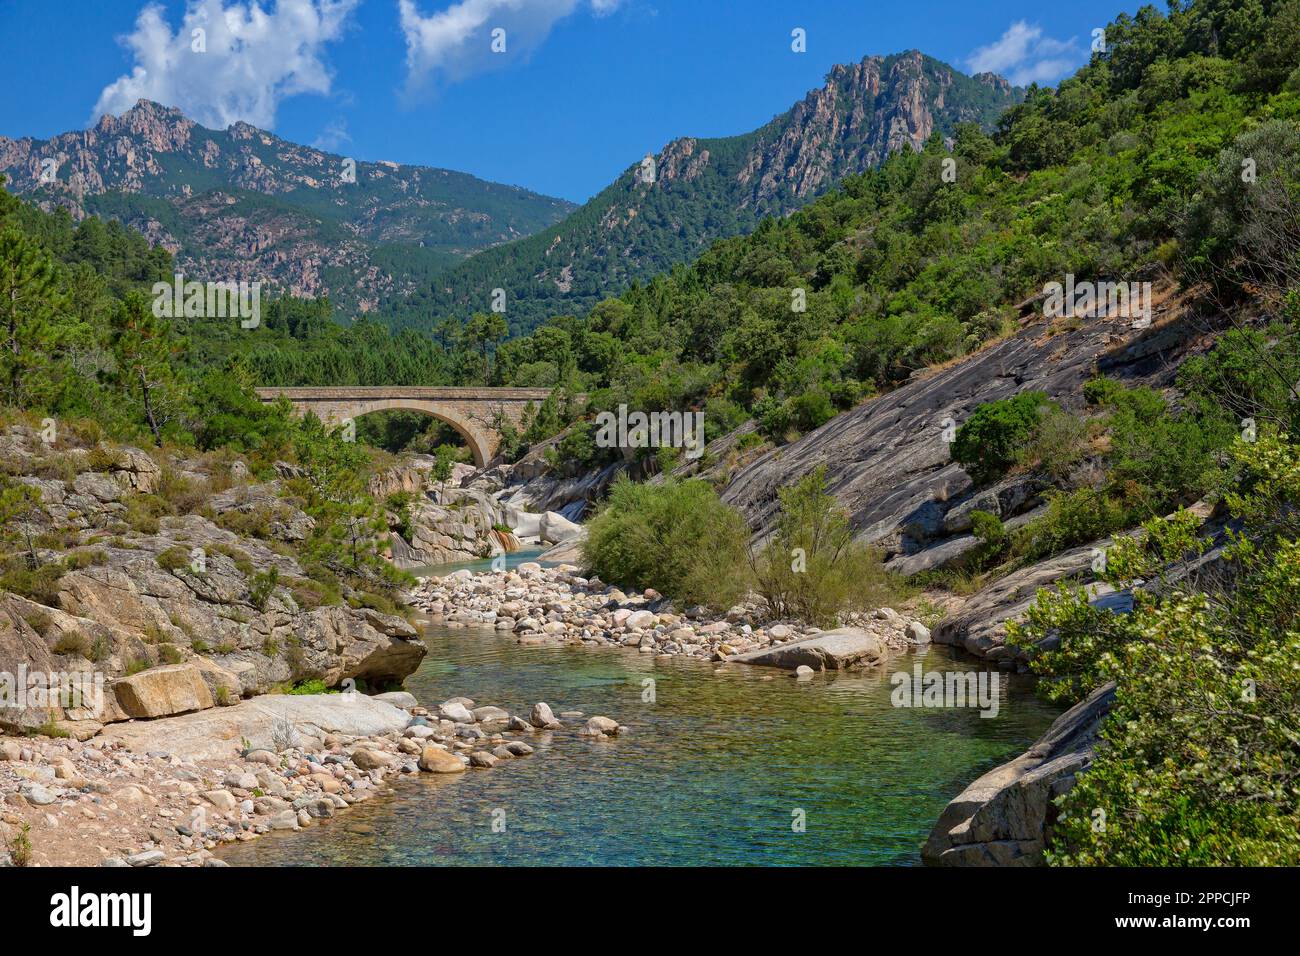 Piscines Naturelles De Cavu sind natürliche Schwimmbäder, die vom Fluss Cavu, Corse du Sud, Korsika, Frankreich, gebildet werden Stockfoto